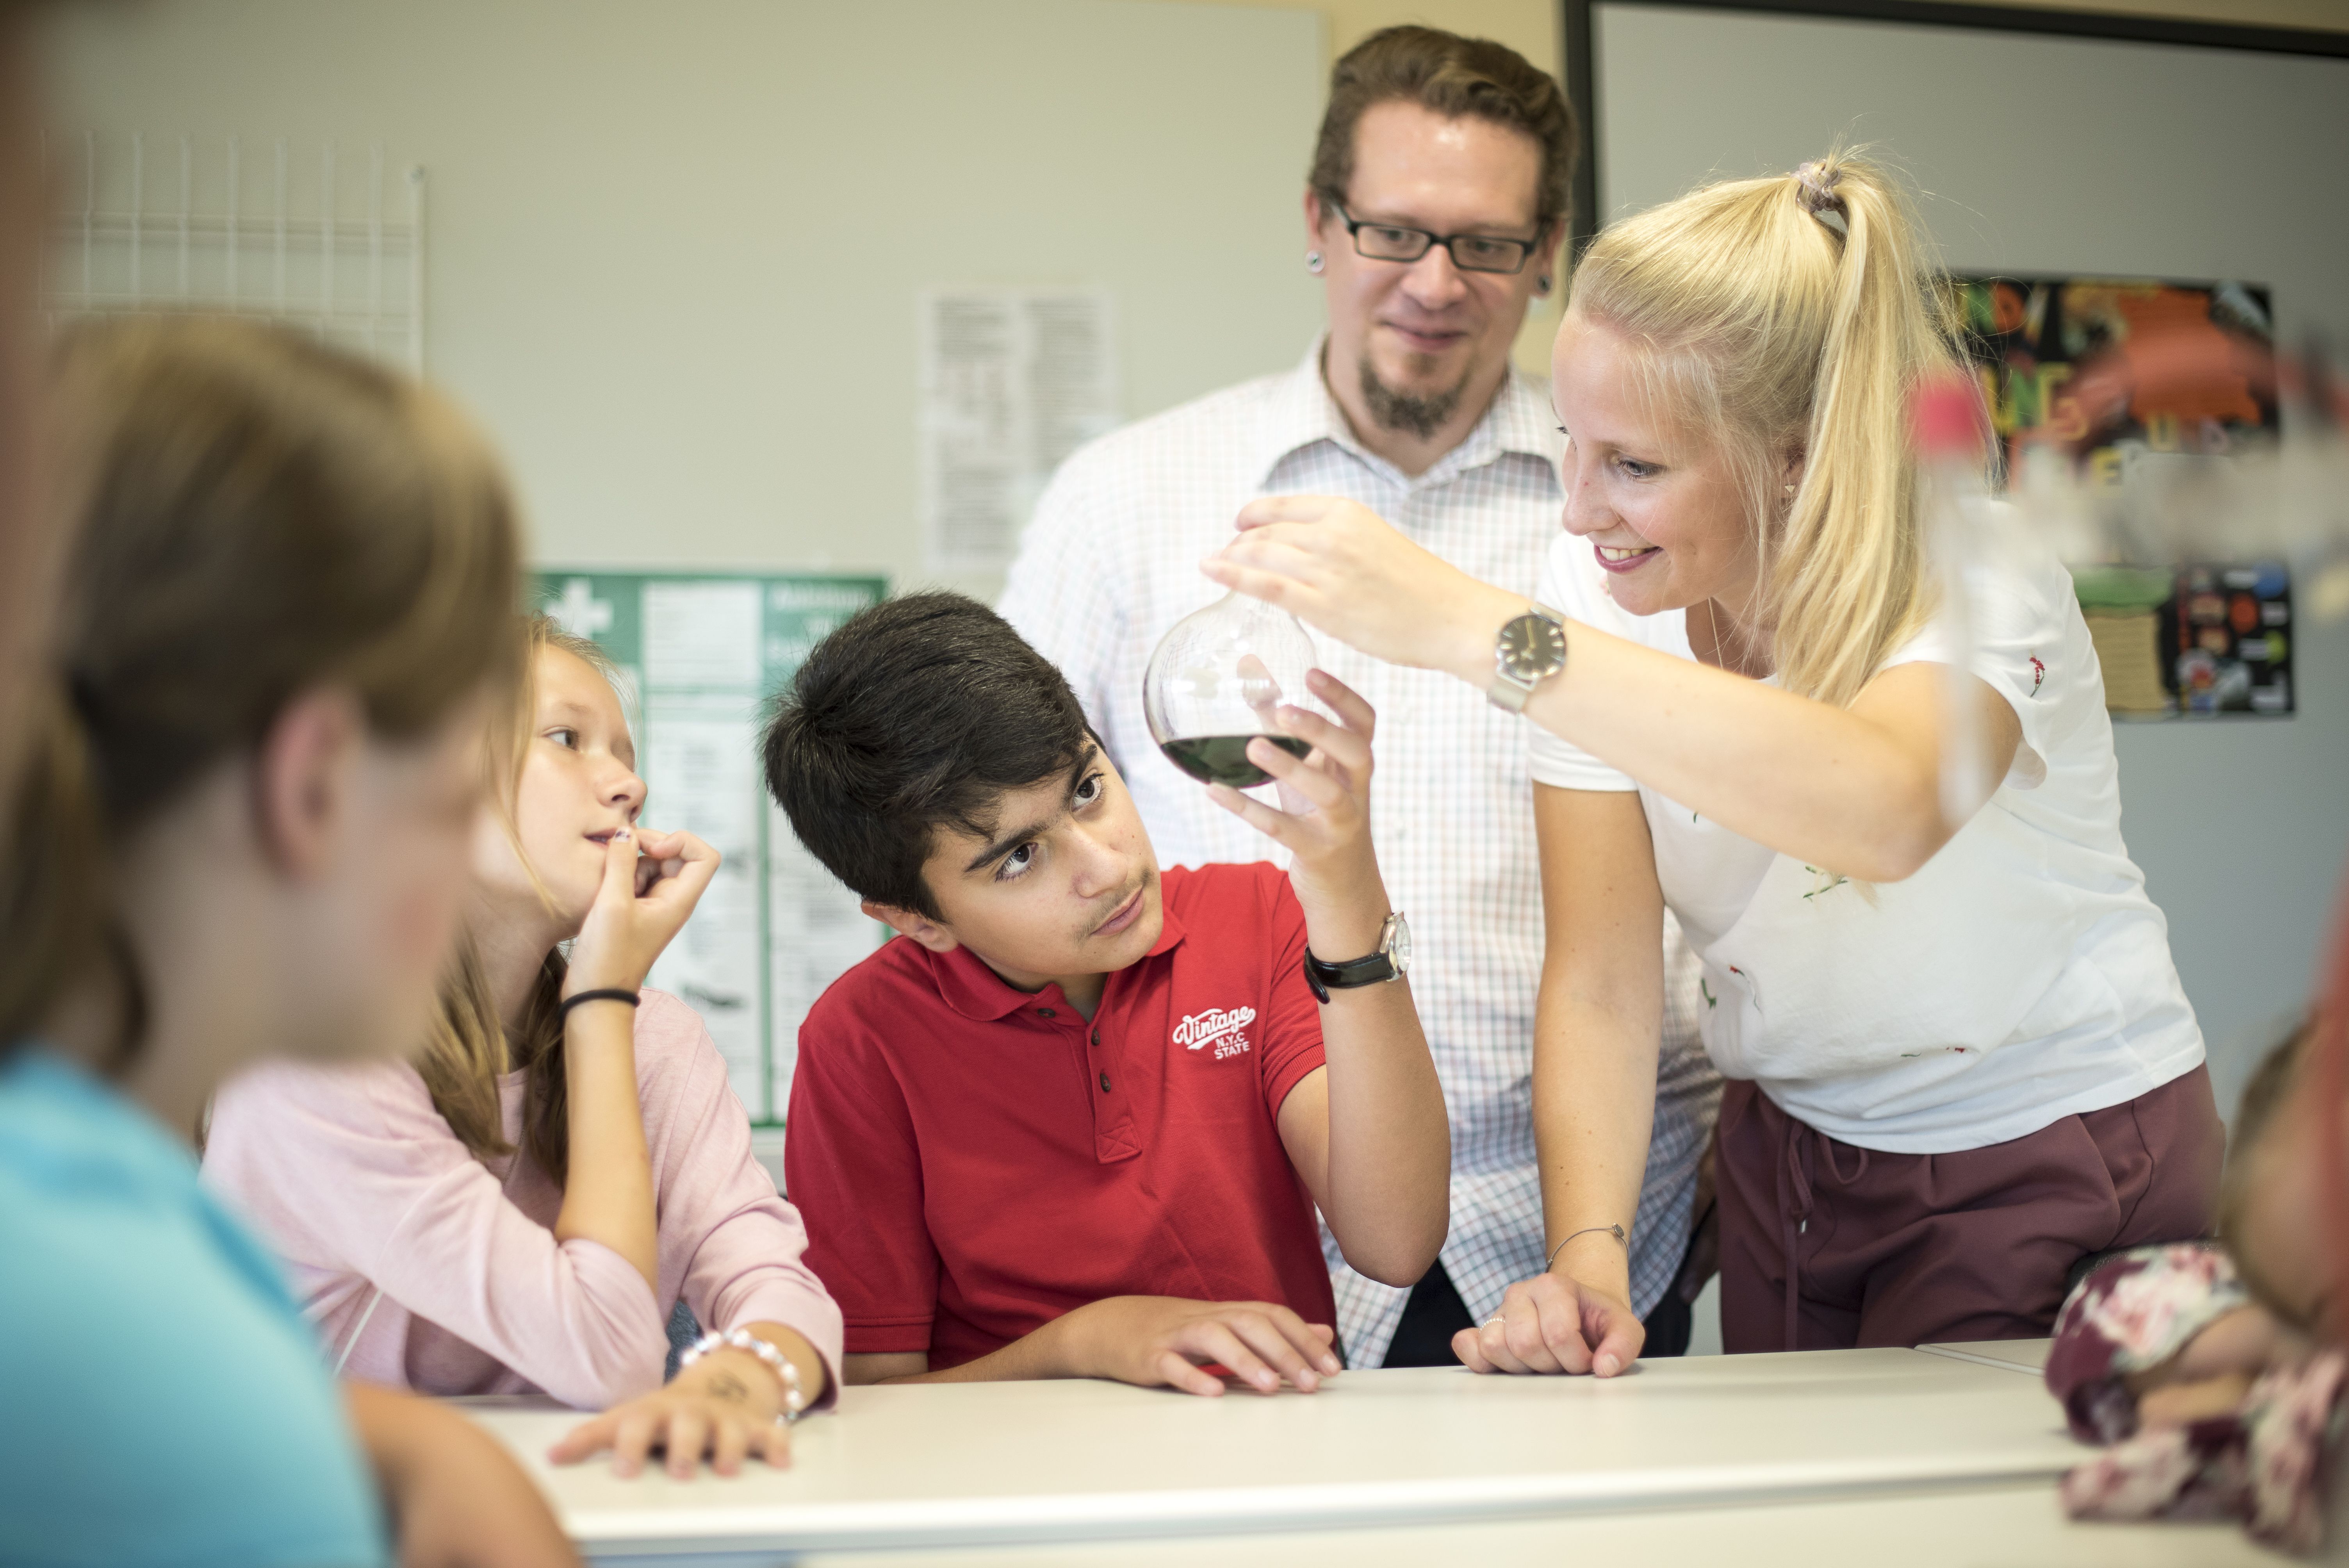 Lernsituation mit Lehrkräften und Schülerinnen und Schülern. Frau zeigt einem Jungen ein Laborglas.